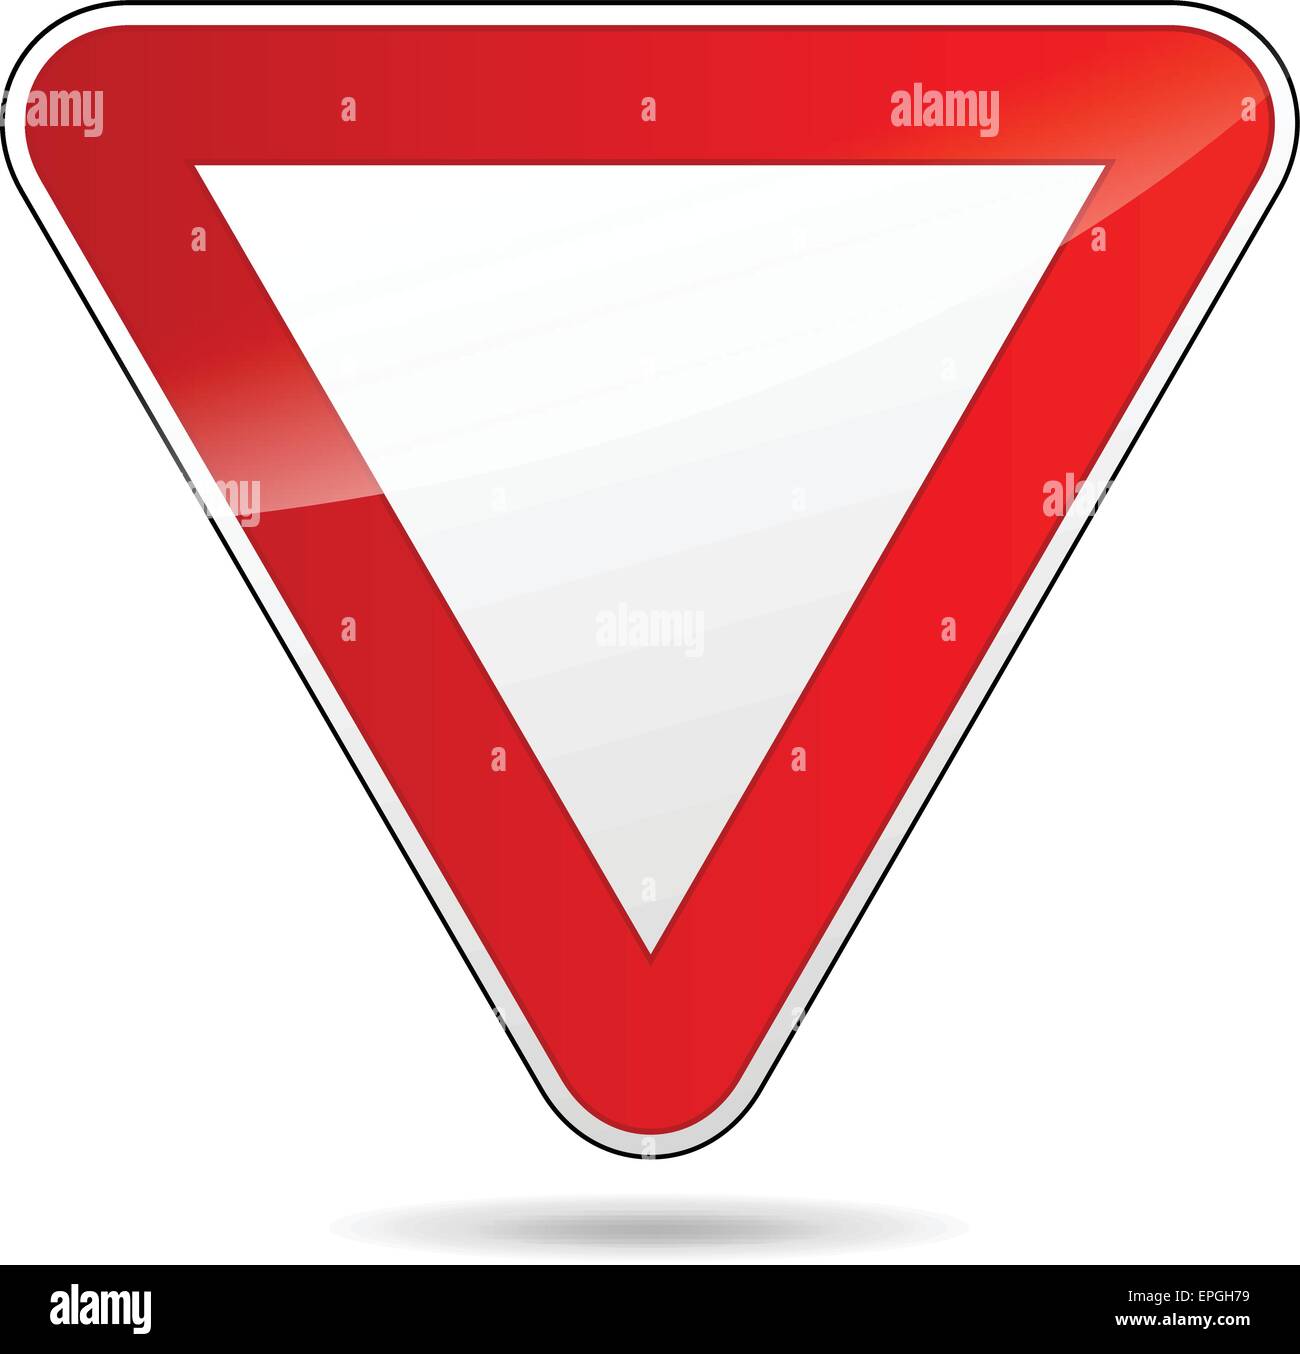 Ilustración de diseño triangular de rendimiento señal de carretera Ilustración del Vector